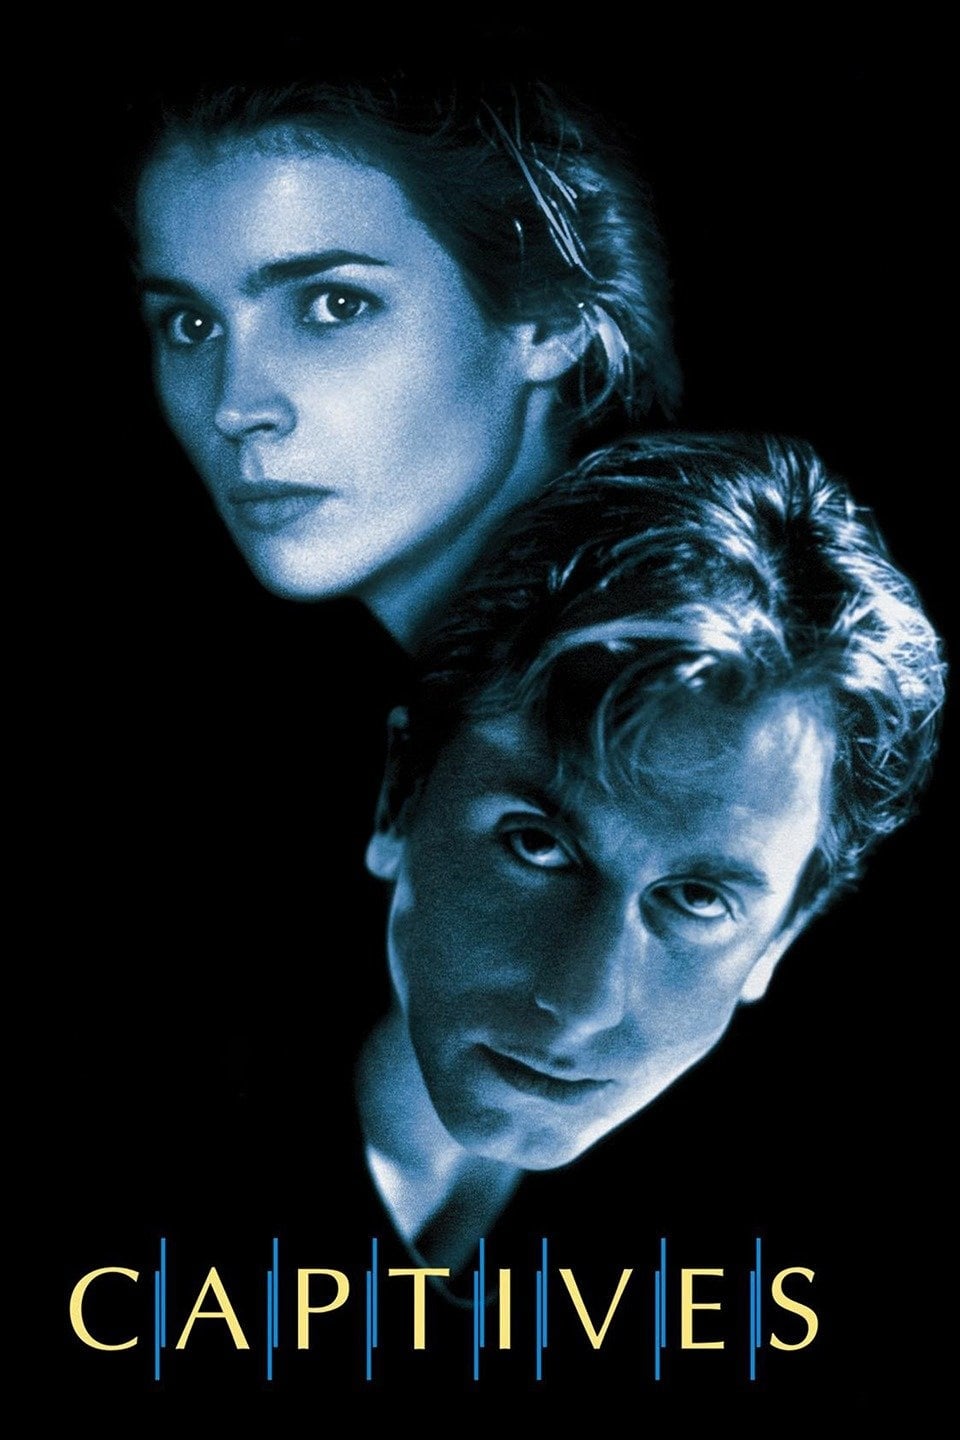 Captives (1994)